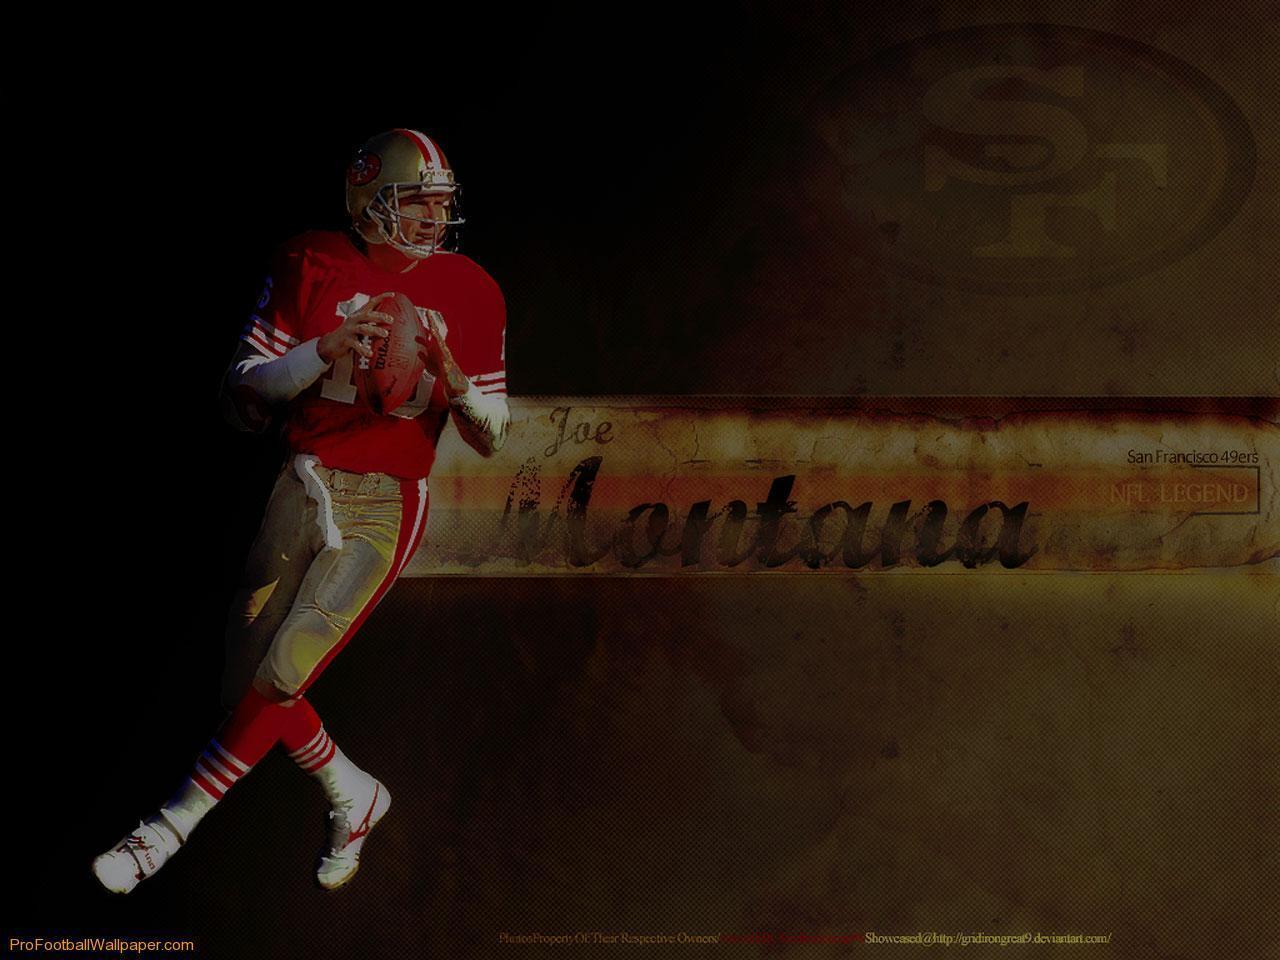 Joe Montana 1 1280×960 NFL Wallpaper Res: 1280x960. NFL